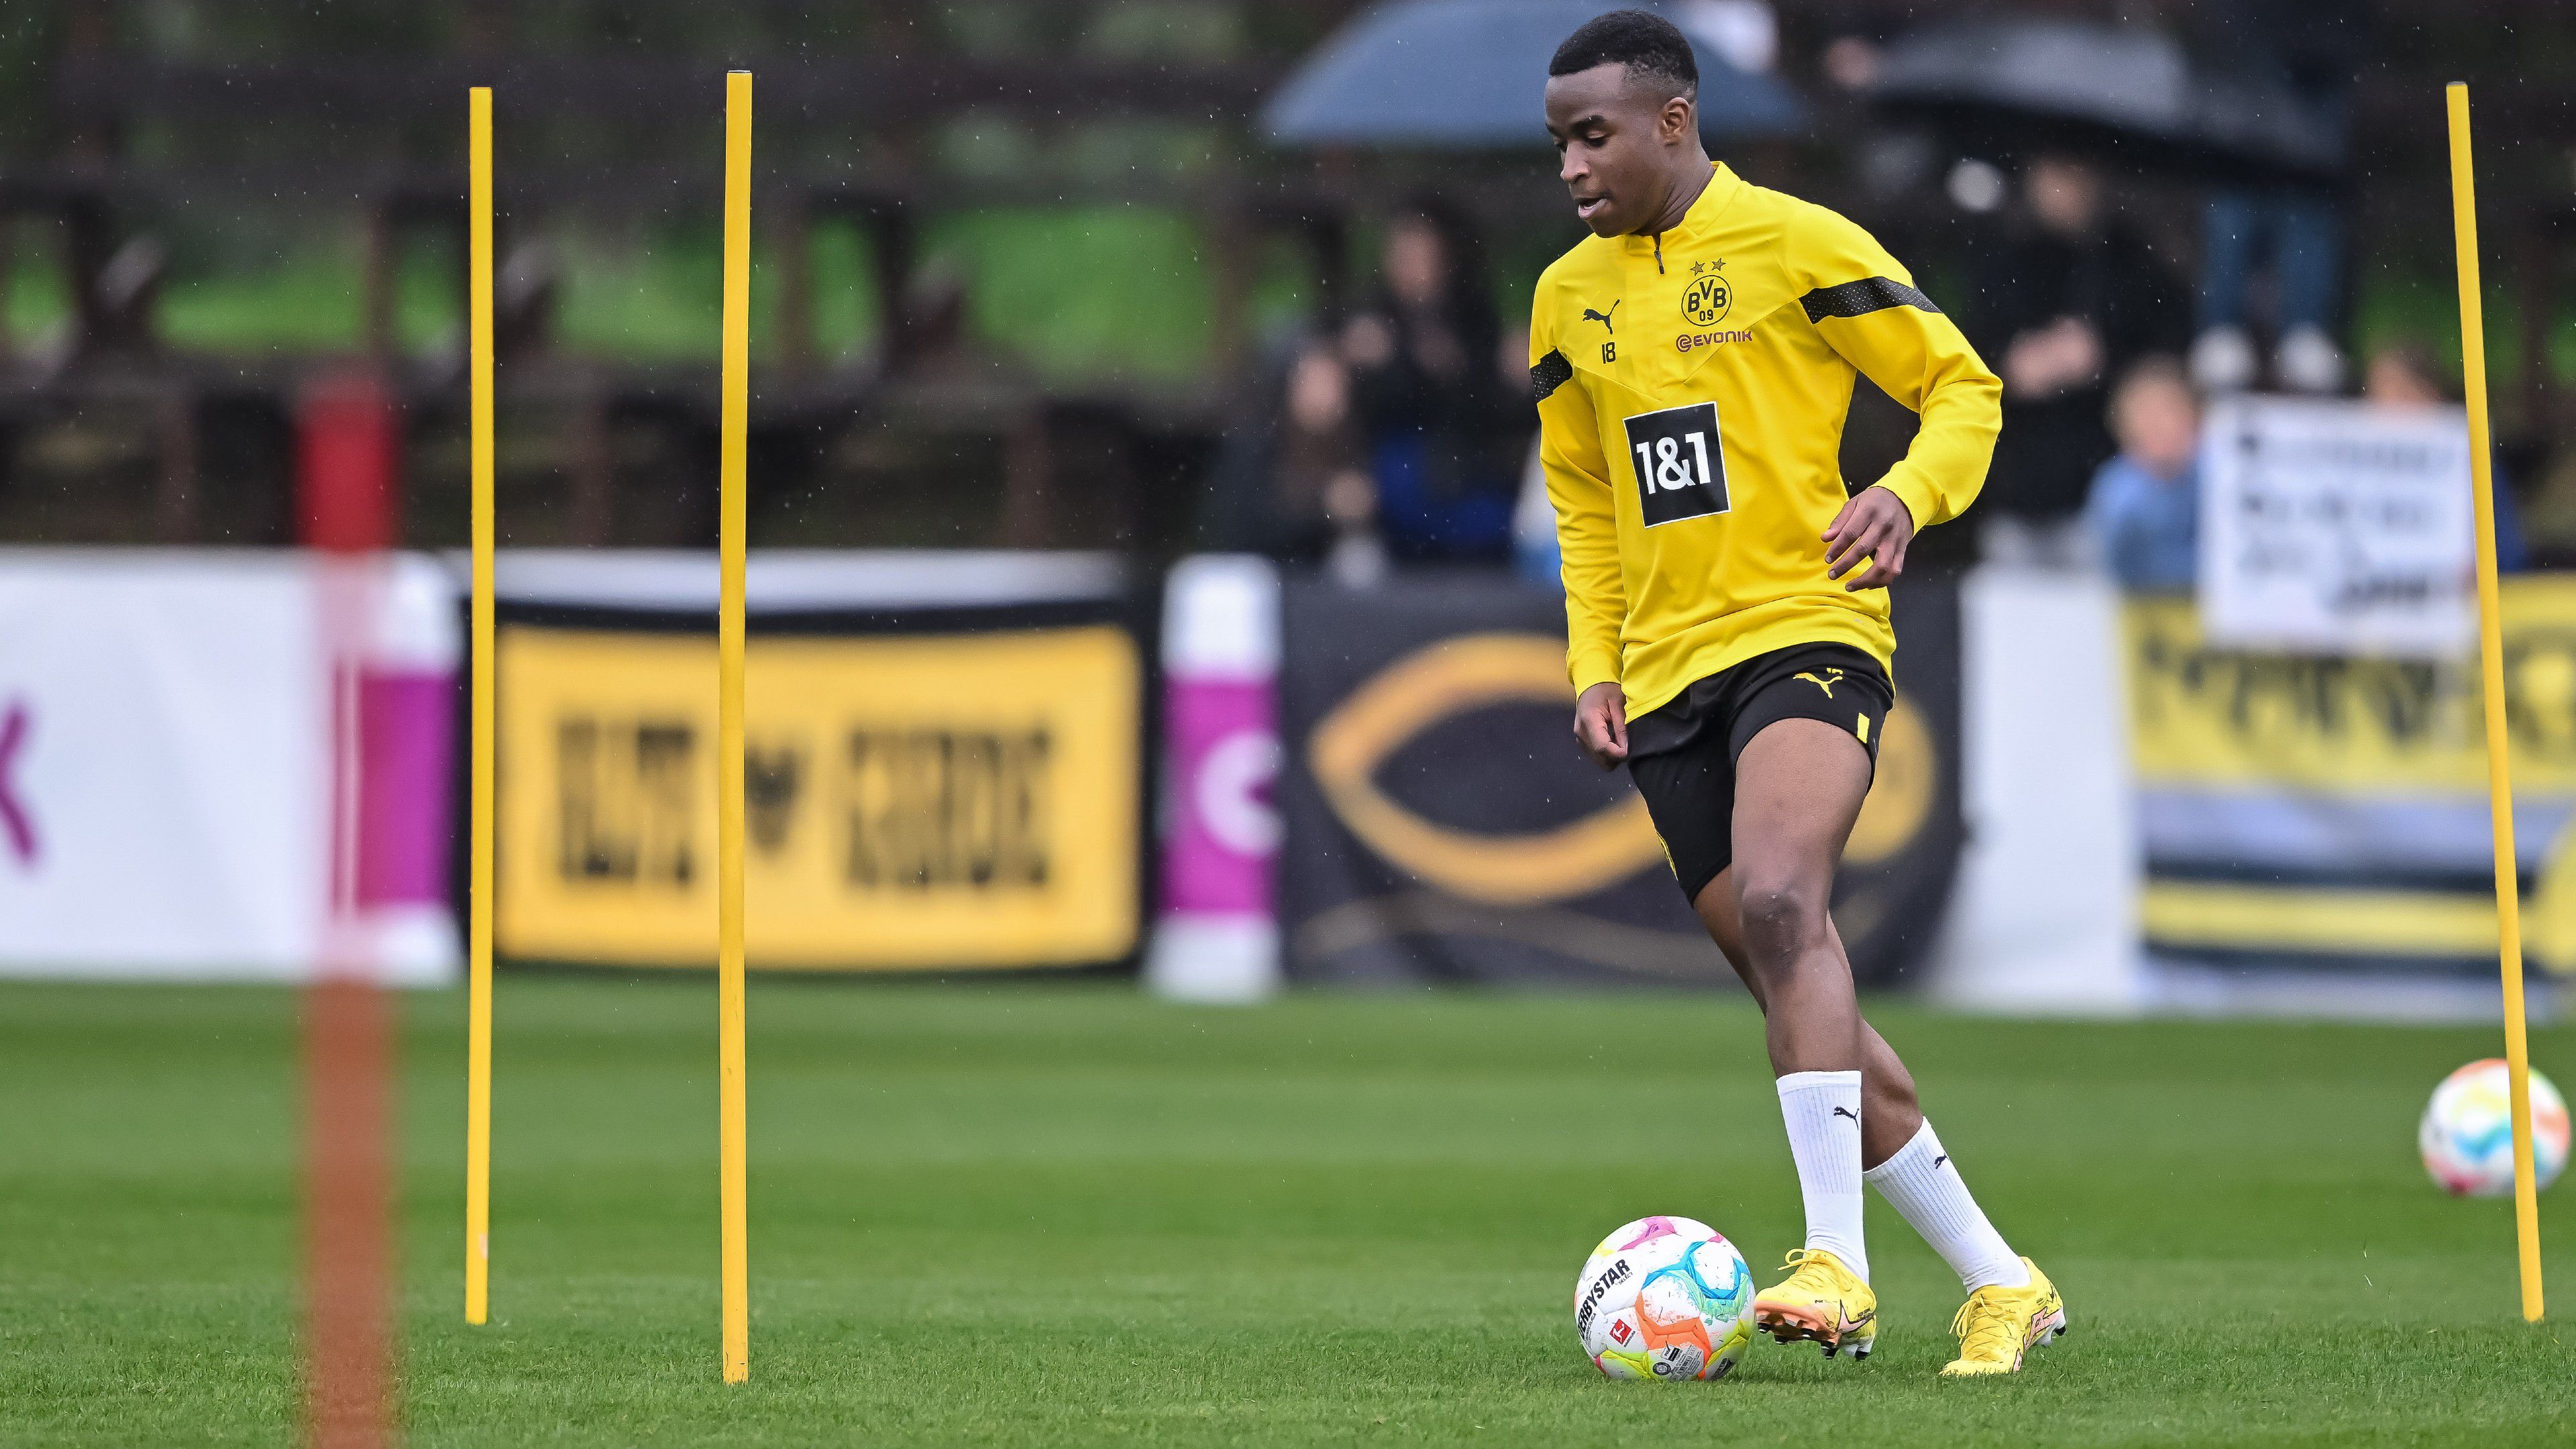 Ingyen szerezheti meg a Dortmund fiatal sztárját a Newcastle